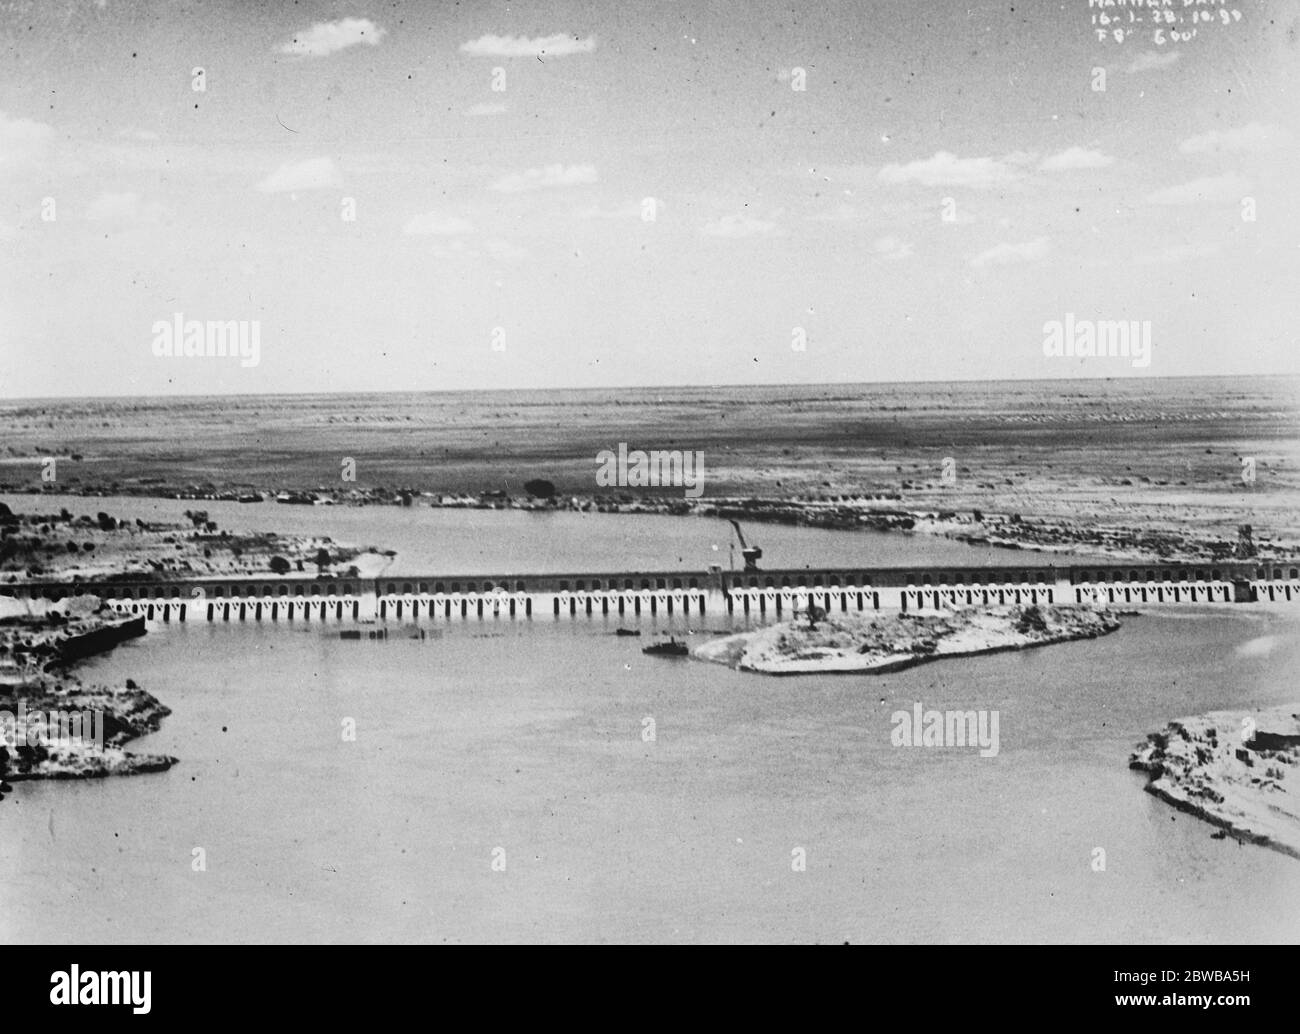 La presa más grande del mundo fotografiada desde el aire. Vista aérea de la poderosa represa de Makwar, cuya terminación se ha abierto al riego de algodón 300,000 acres de la llanura de Gezira entre el Nilo Azul y Blanco . 29 de octubre de 1925 Foto de stock